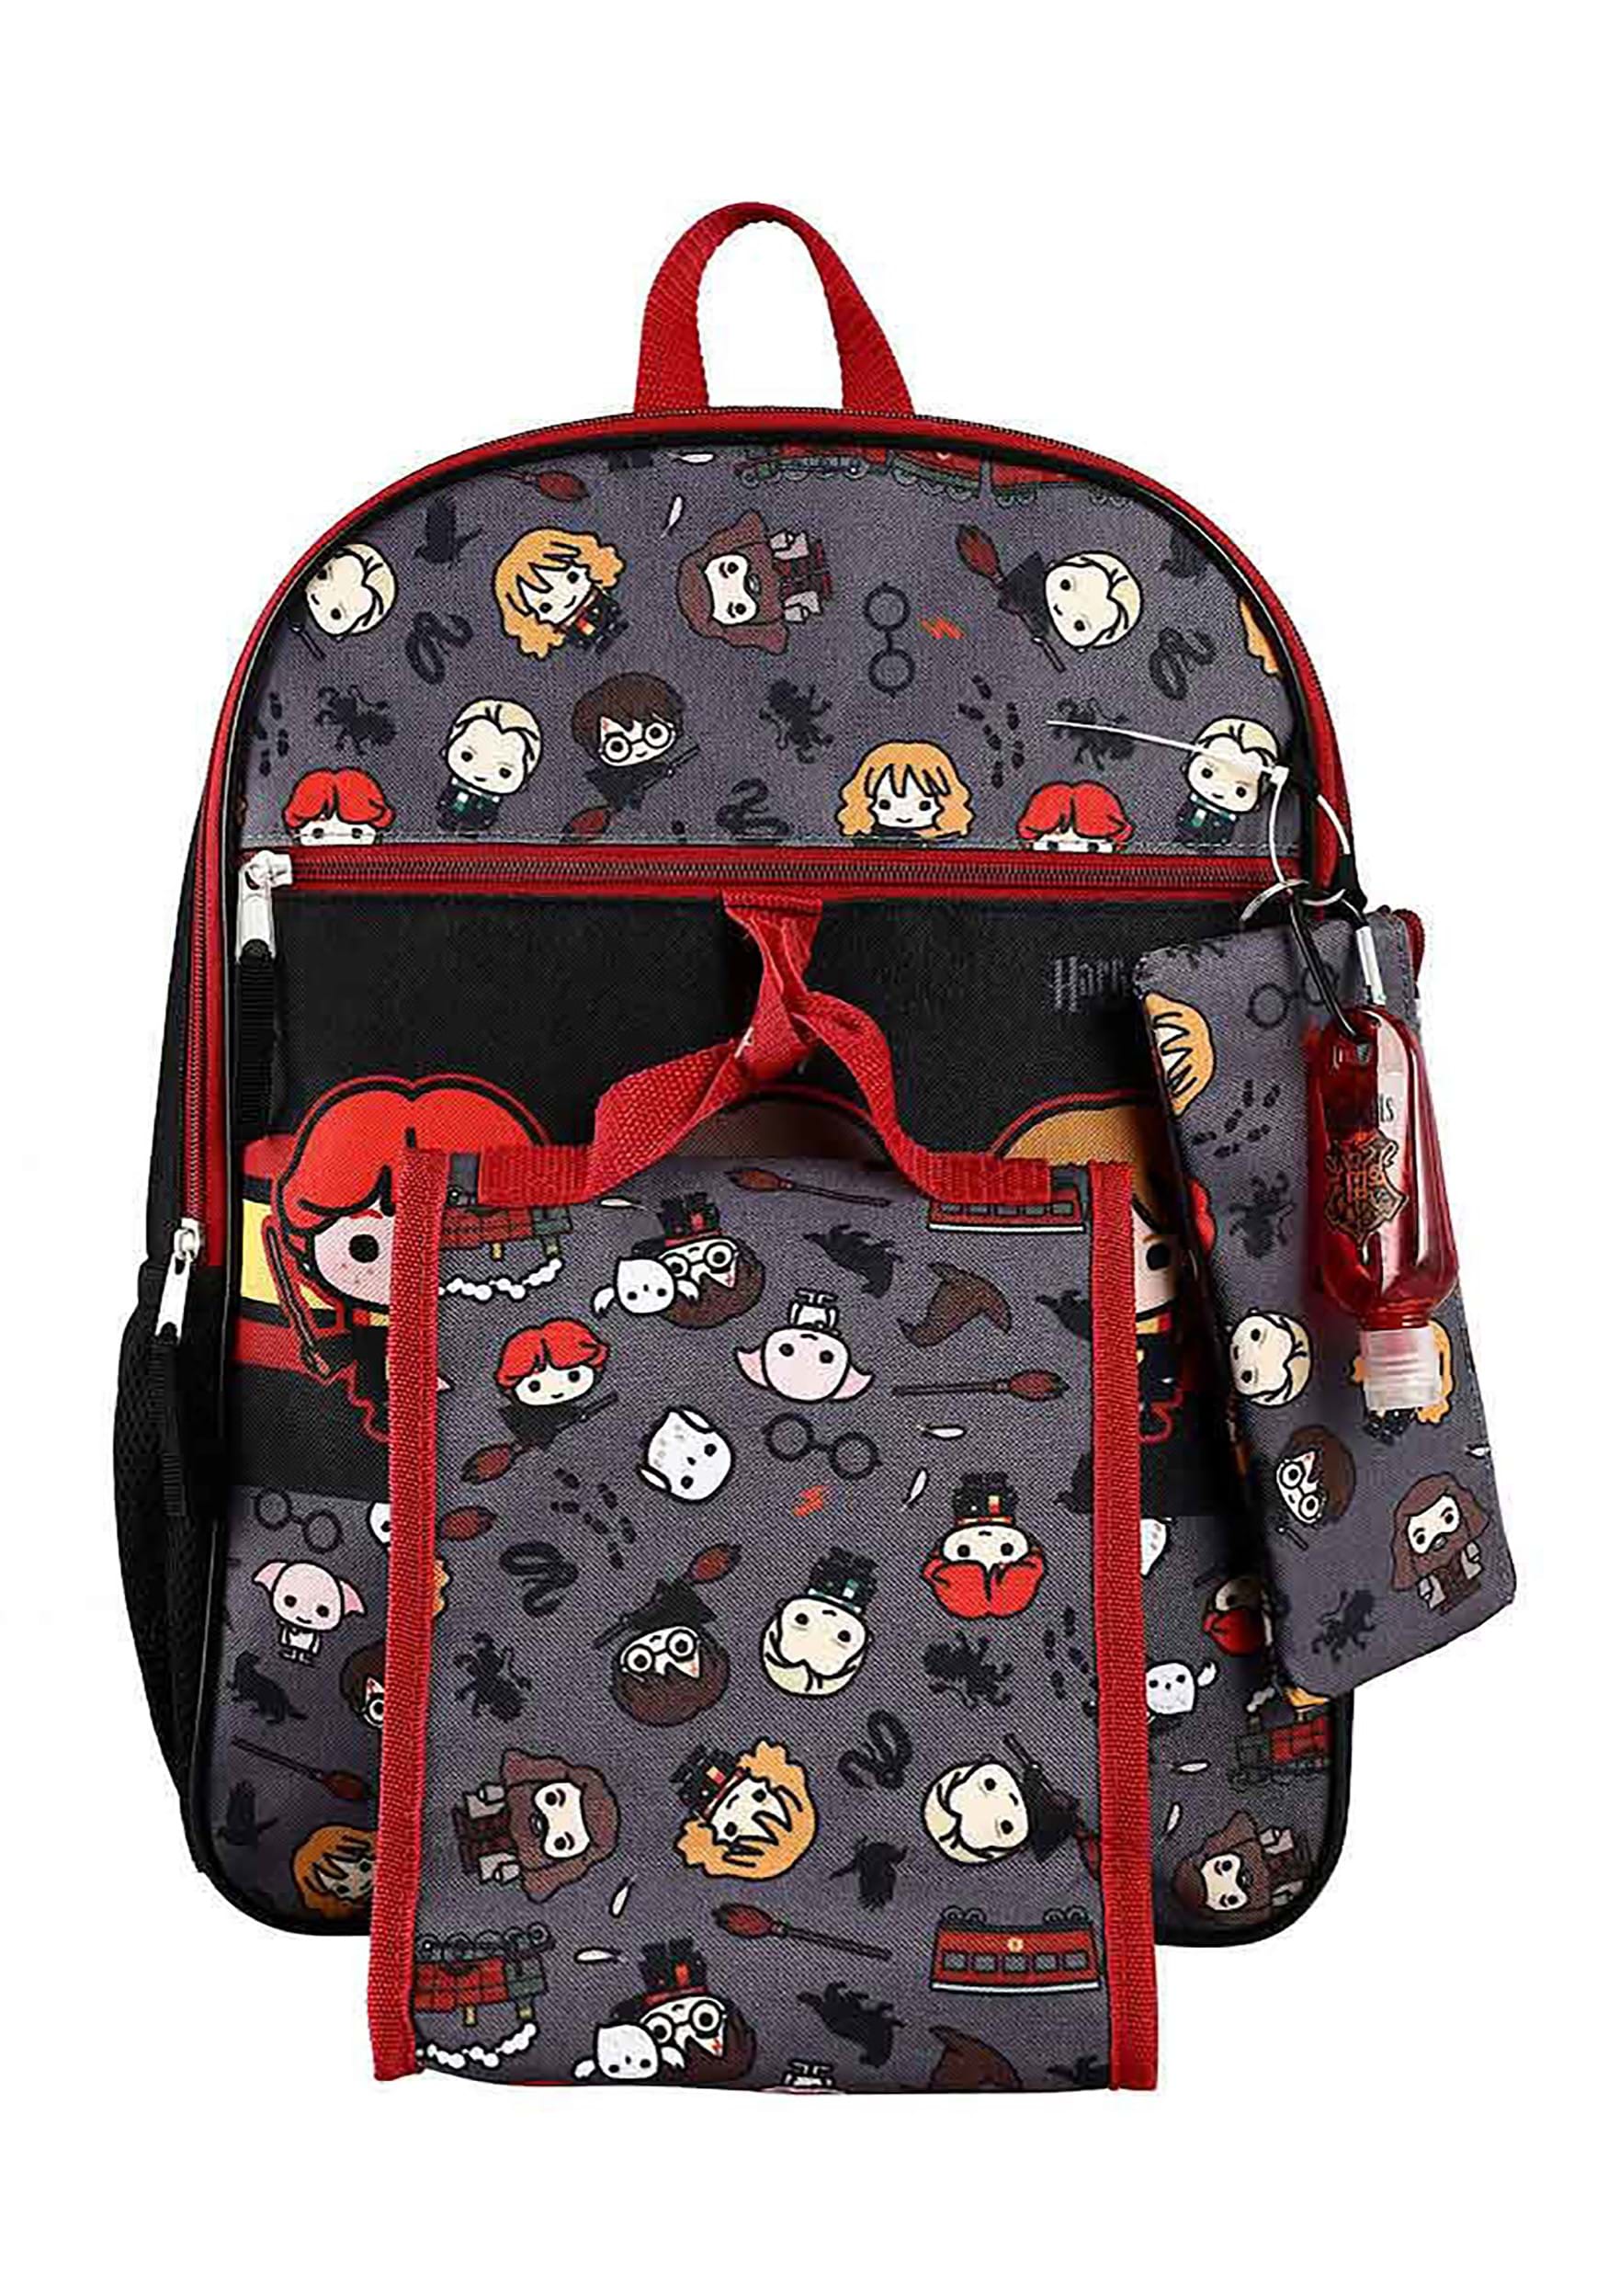 6 Piece Harry Potter Chibi Backpack Set | Harry Potter Backpacks